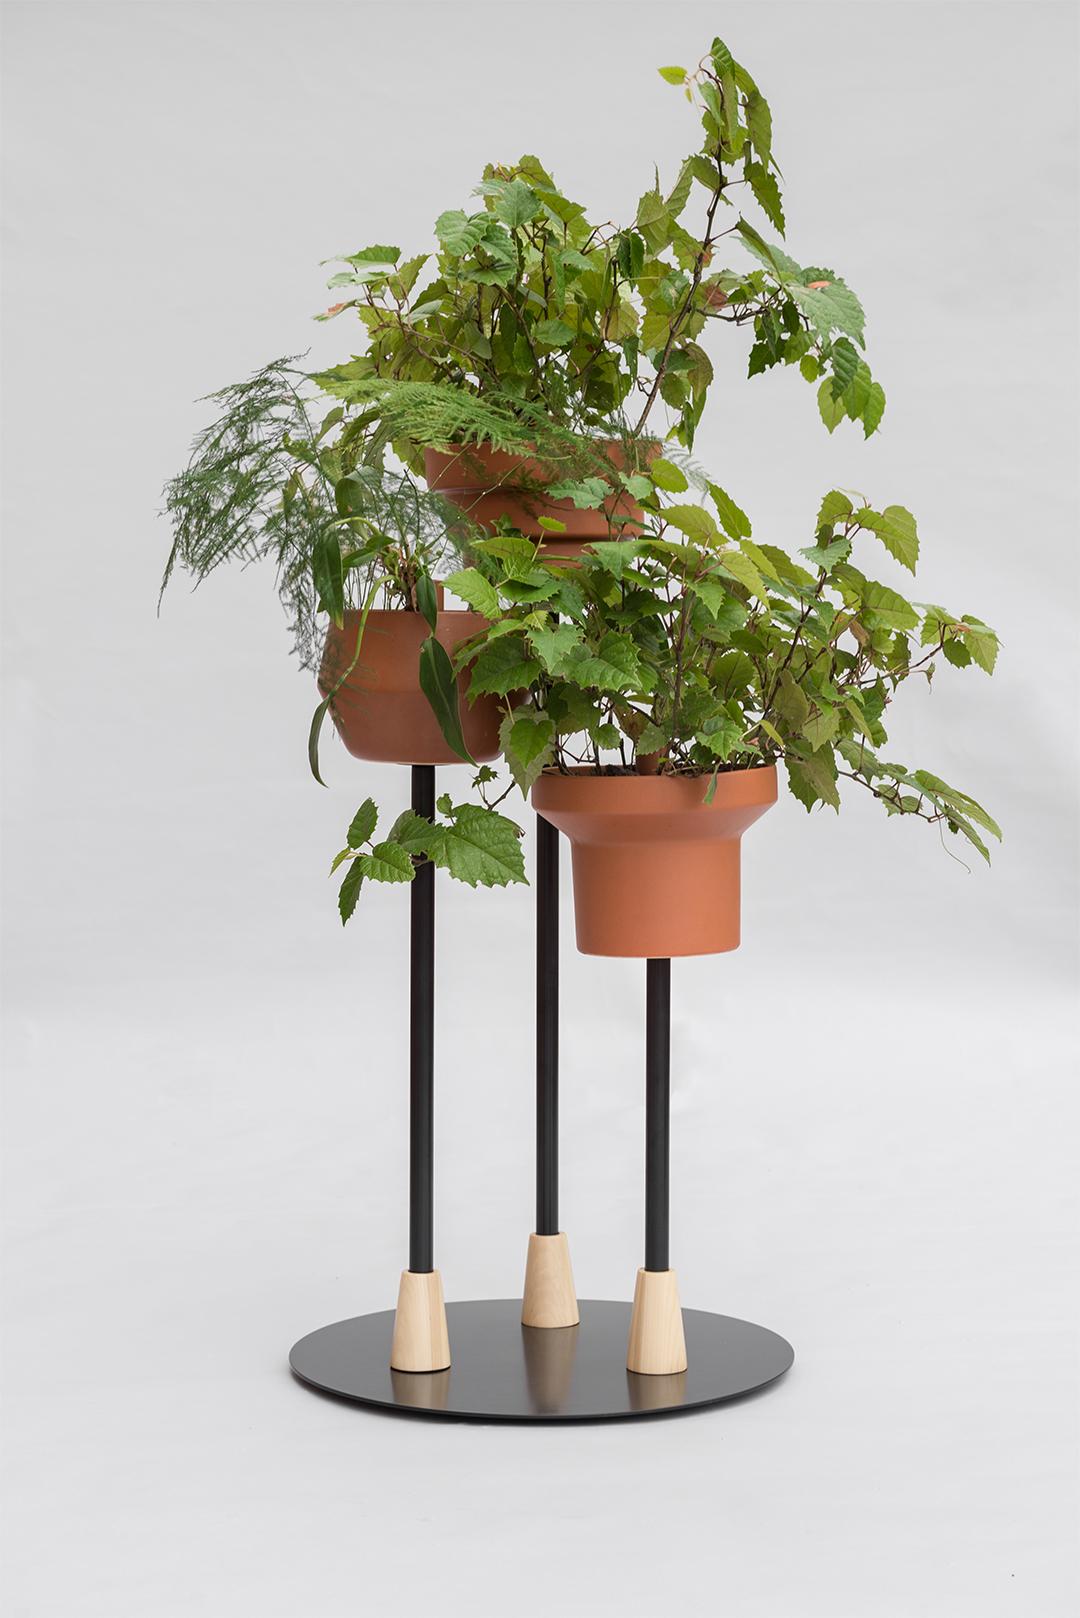 Glazed Trinum Pedestal Multi Planter, Contemporary Mexican Design